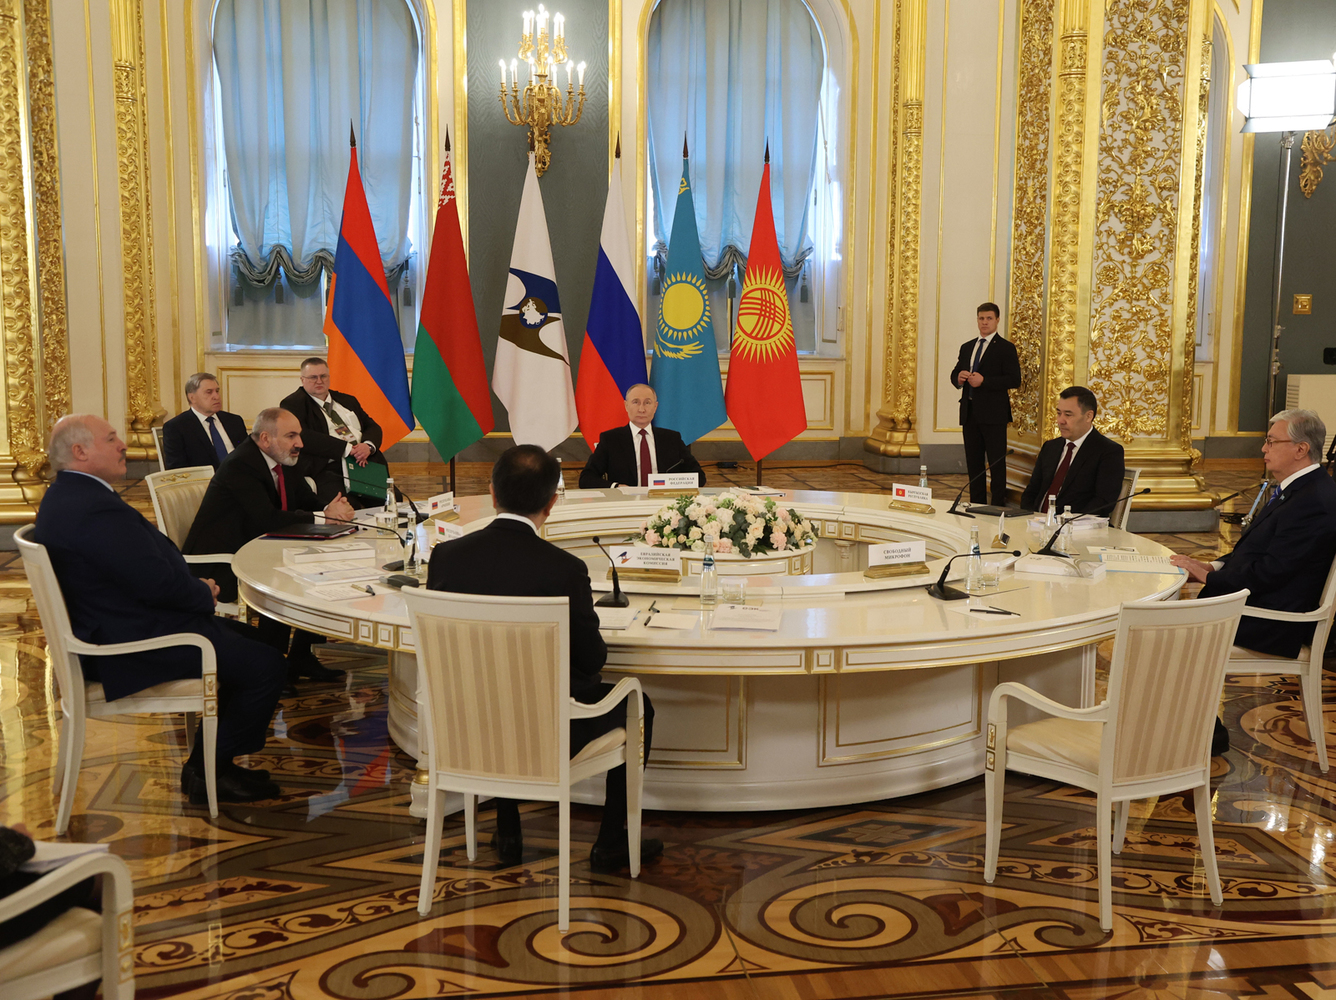 Путин принял Пашиняна, Лукашенко, Токаева в Кремле: кадры саммита в ЕАЭС